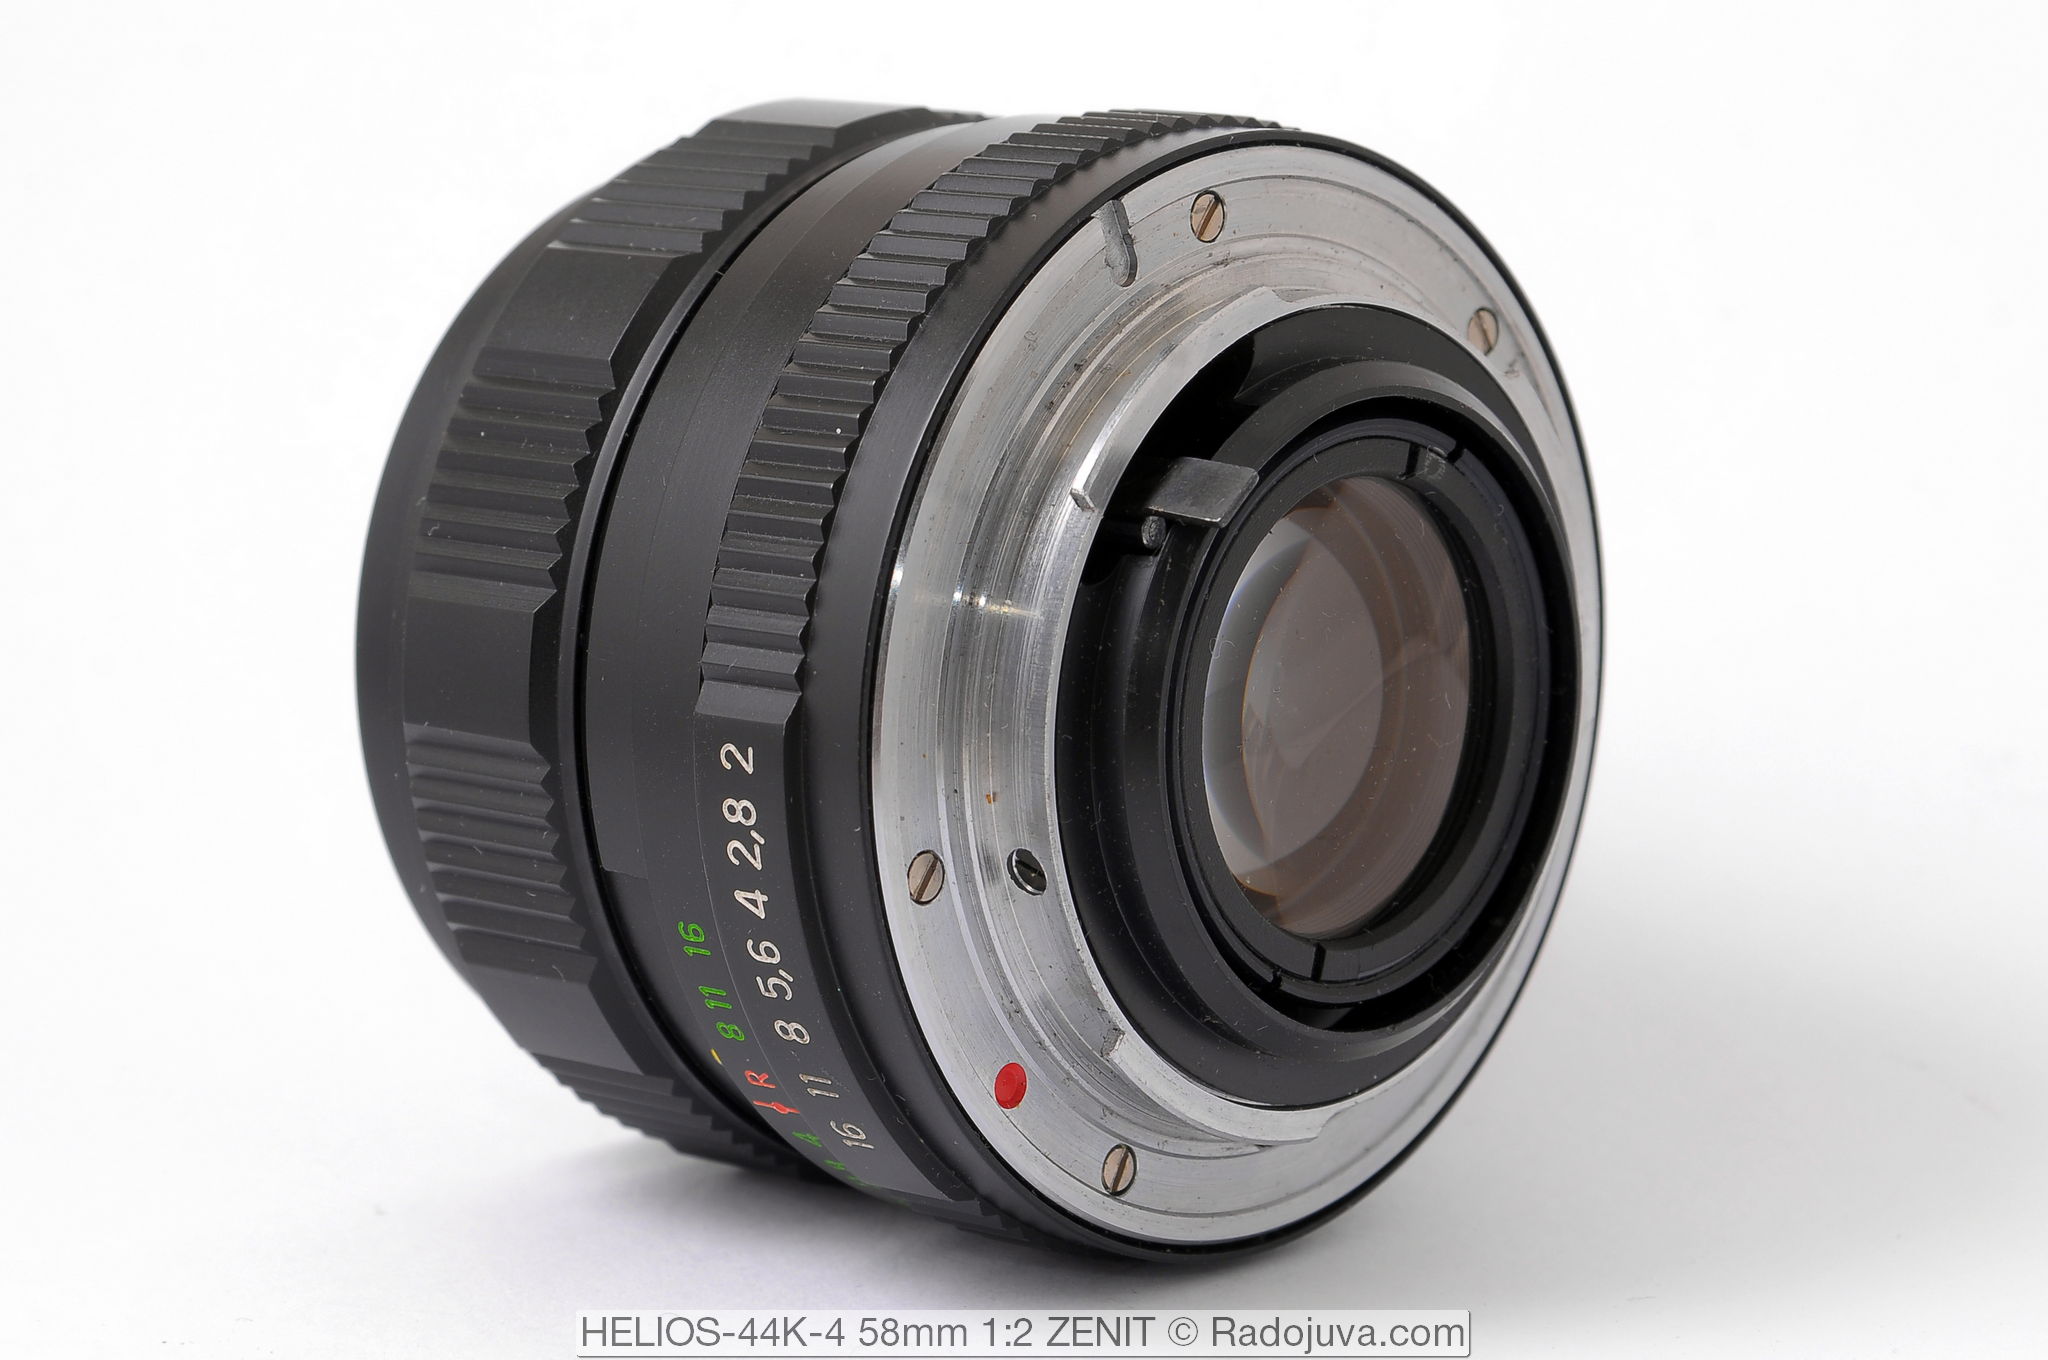 HELIOS-44K-4 58mm 1:2 с байонетом Pentax